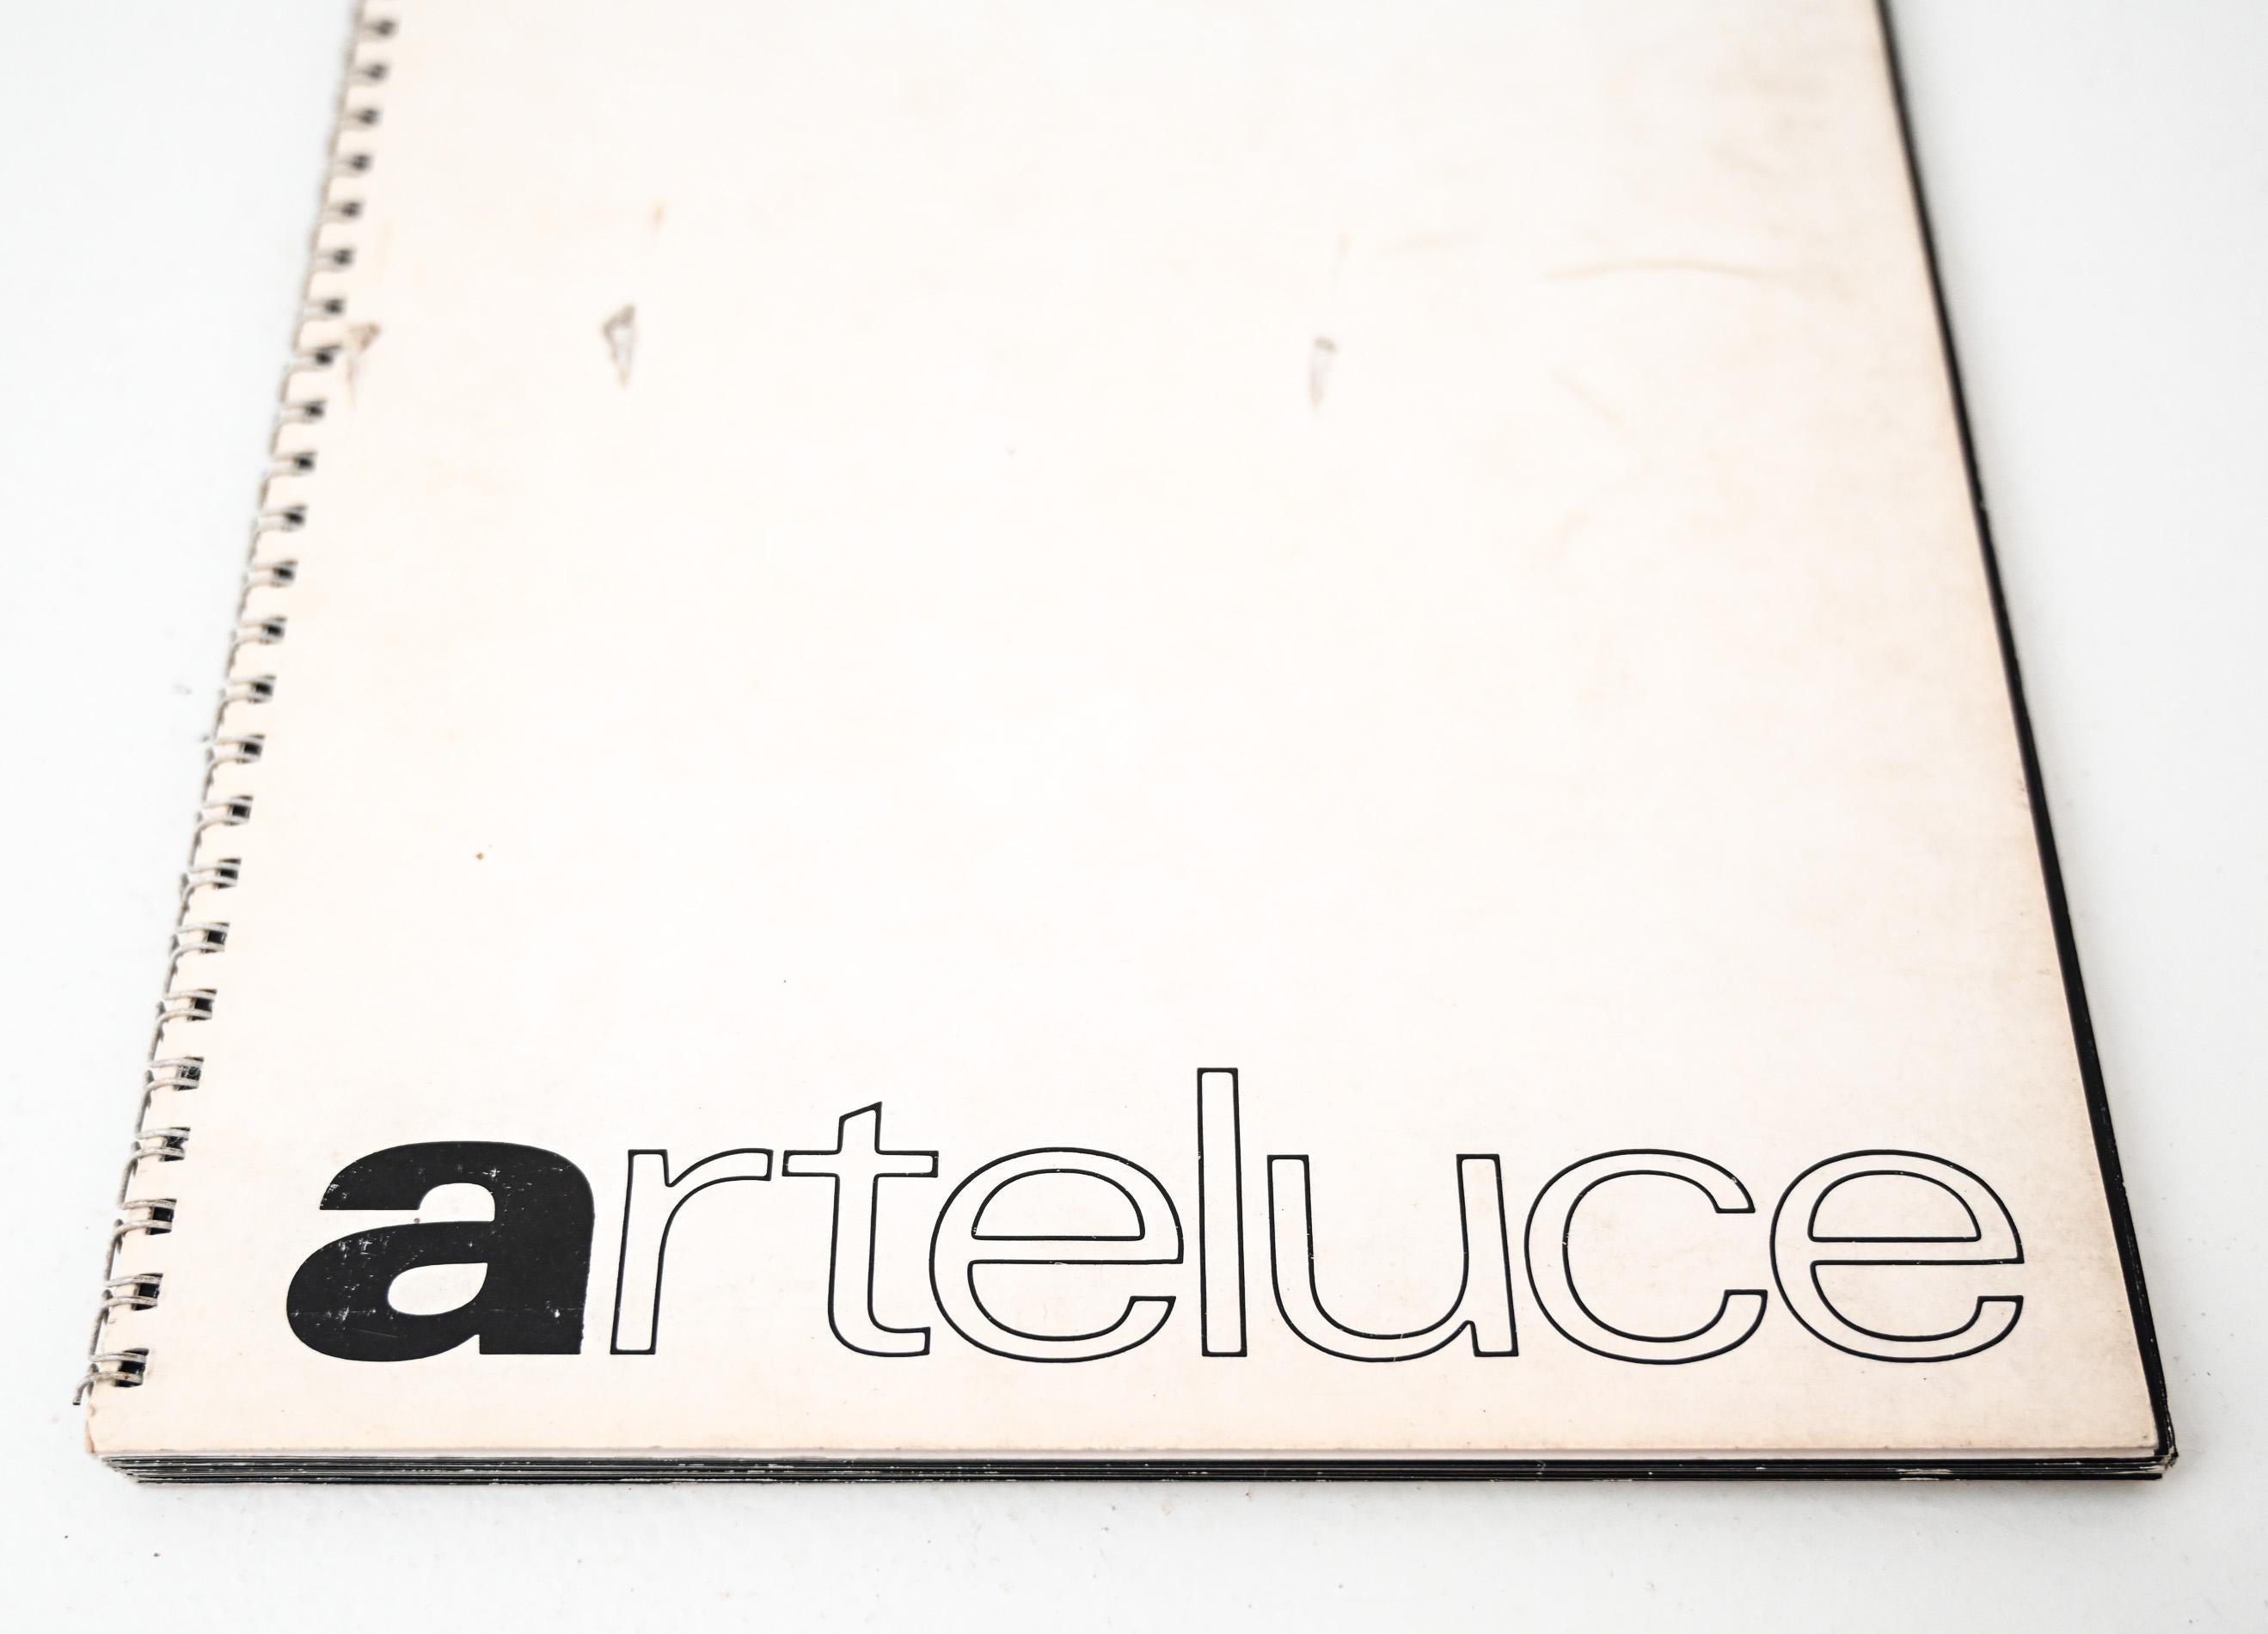 rare 1975 original Arteluce catalogue, 44 pages, text in Italian, English, German & French
ex collection Galerie Mai

Designs by Gino Sarfatti, Massimo Vignelli, Antonio Macchi Cassia, Vittorio Gregotti, Lodovico Meneghetti, Giotto Stoppino,